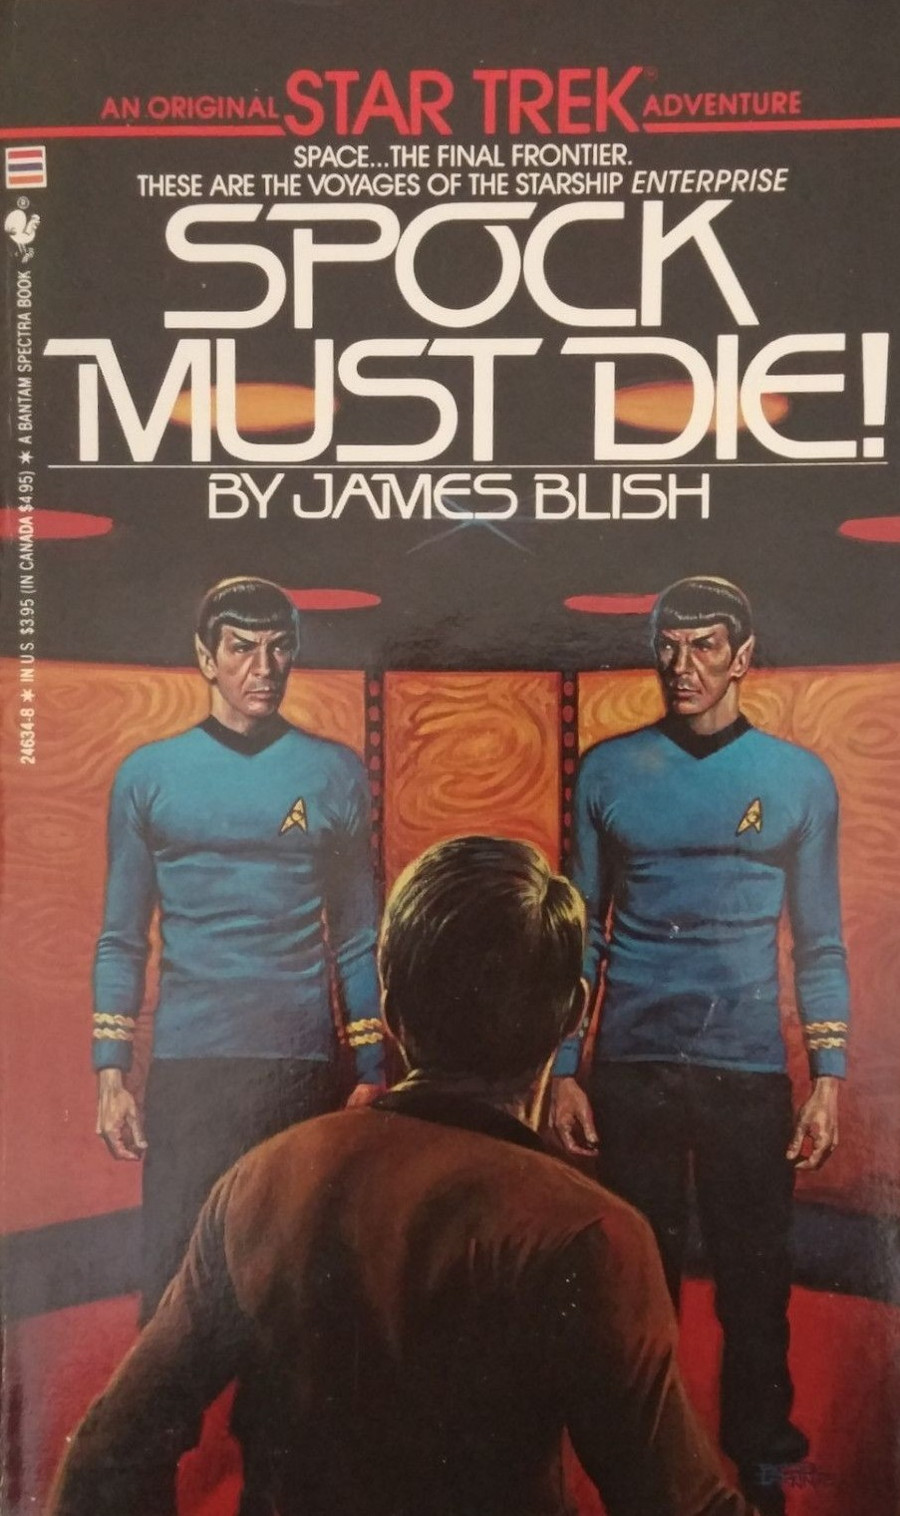 "Spock Must Die!"